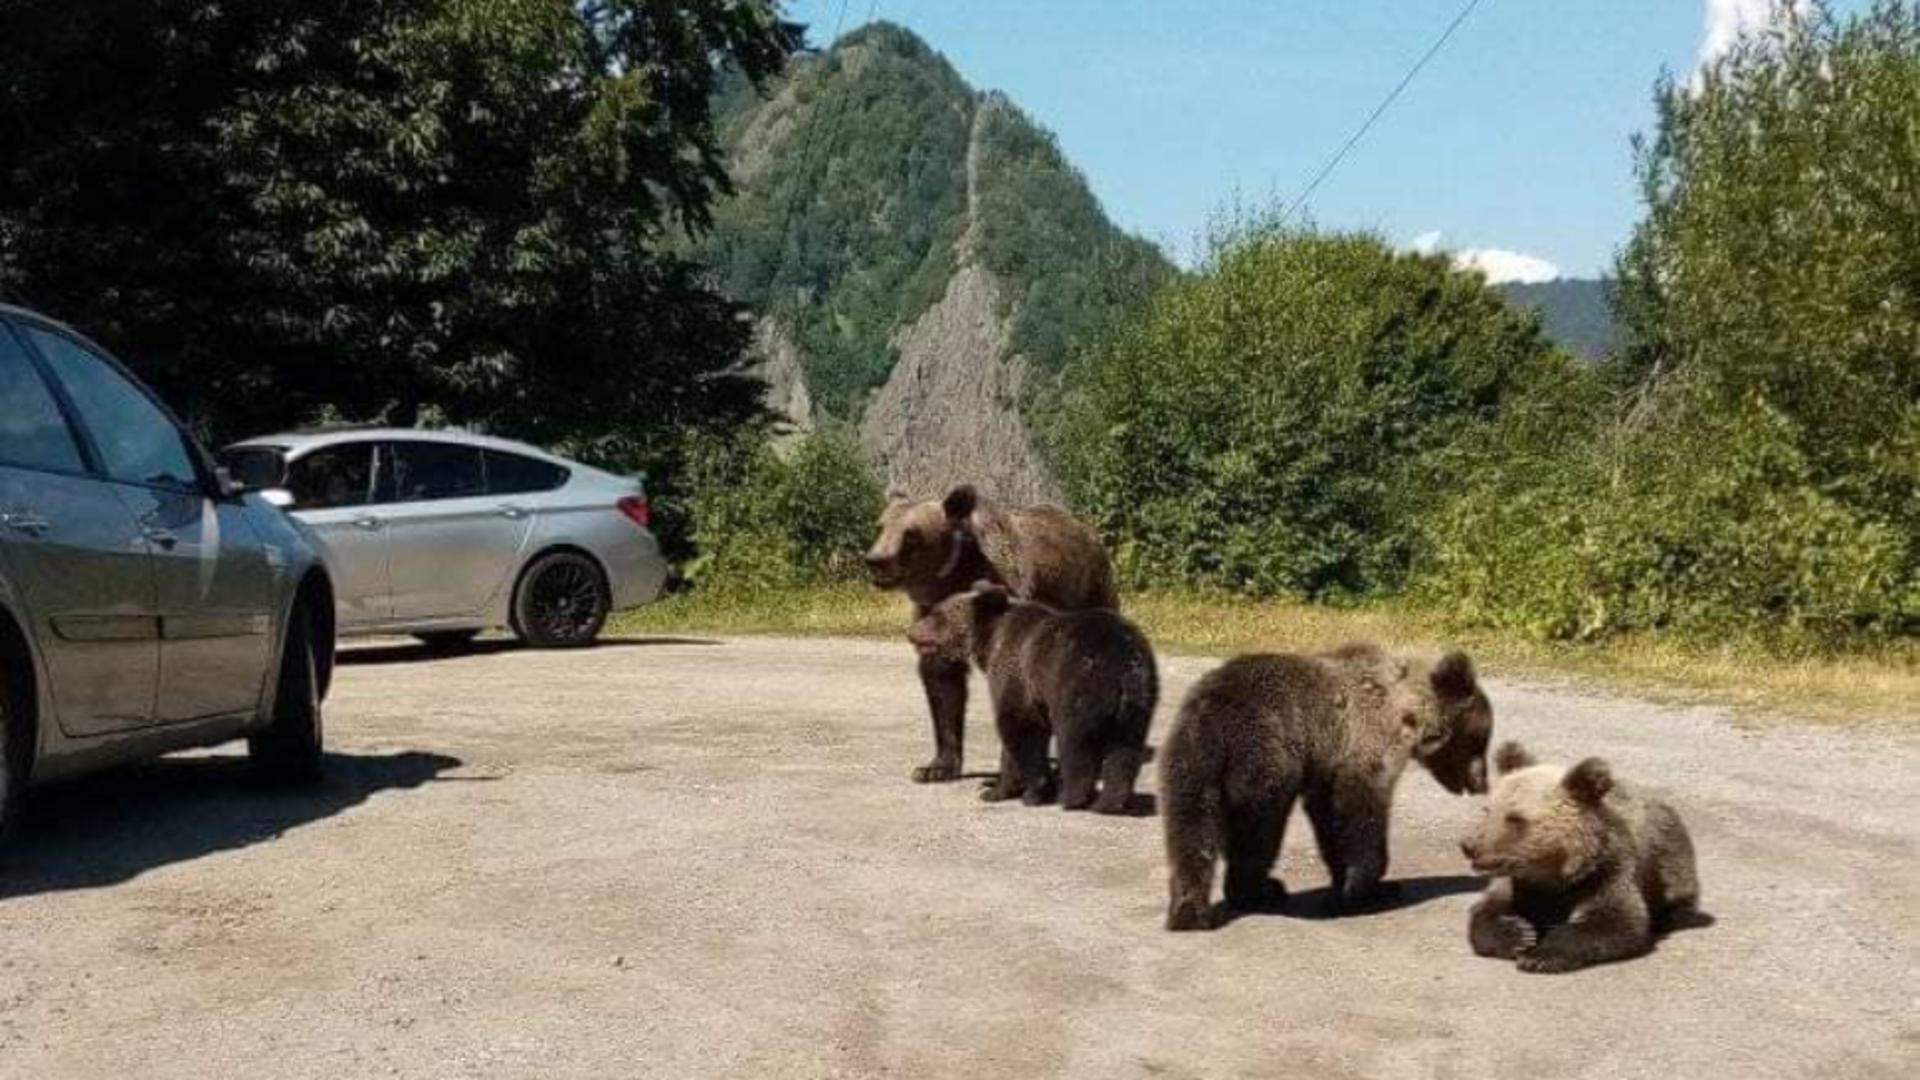 Întîlnirie cu urșii, la ordinea zilei printre turiștii de la munte. Foto/Arhivă